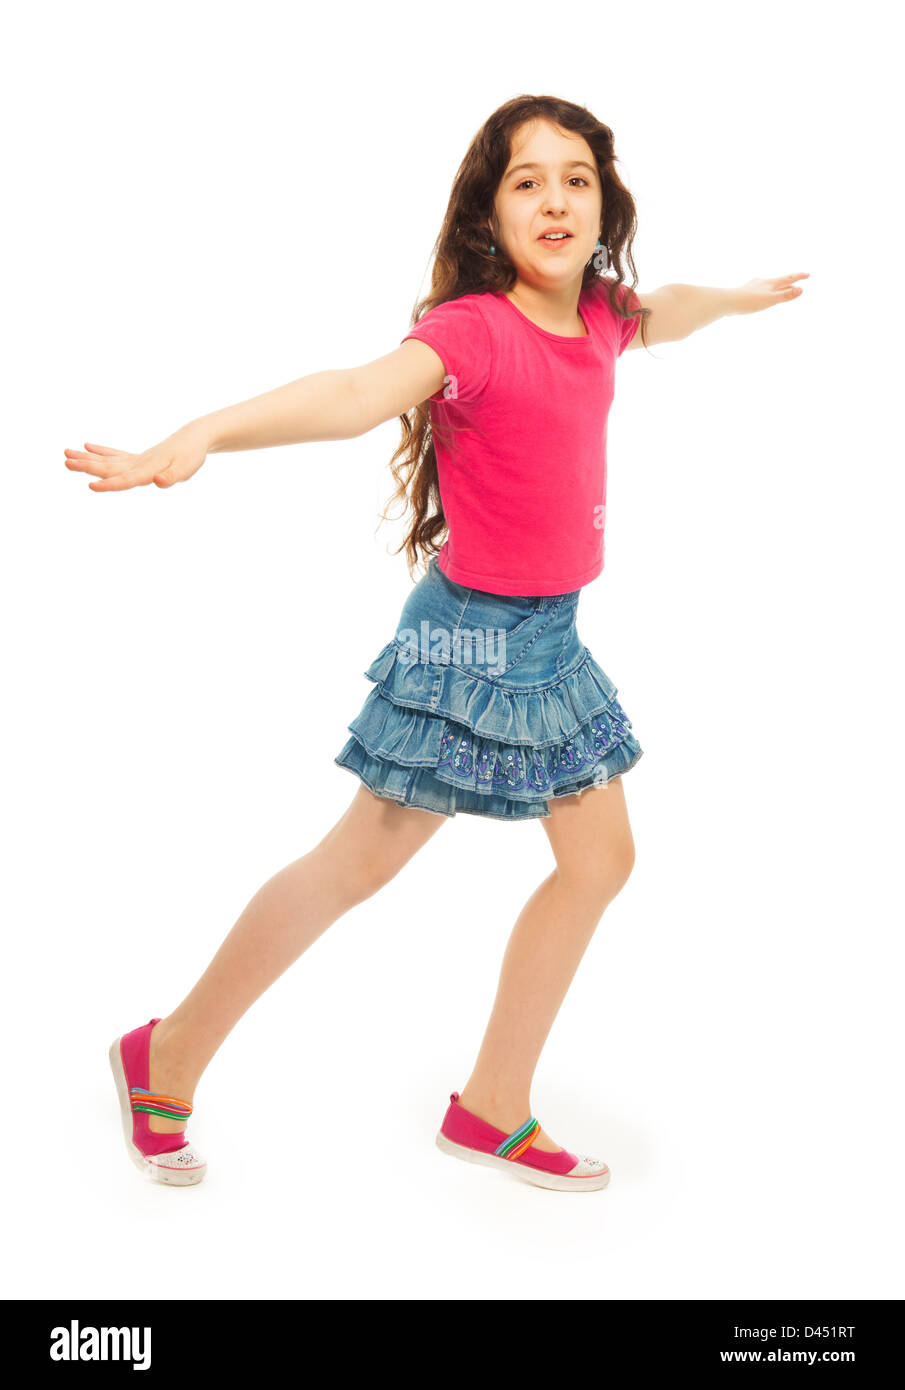 Porträt der glückliche 11 Jahre altes Mädchen mit dem lockigen Haar, ausgeführt, hat Hände hob ret isoliert auf weiss - volle Höhe Porträt Stockfoto